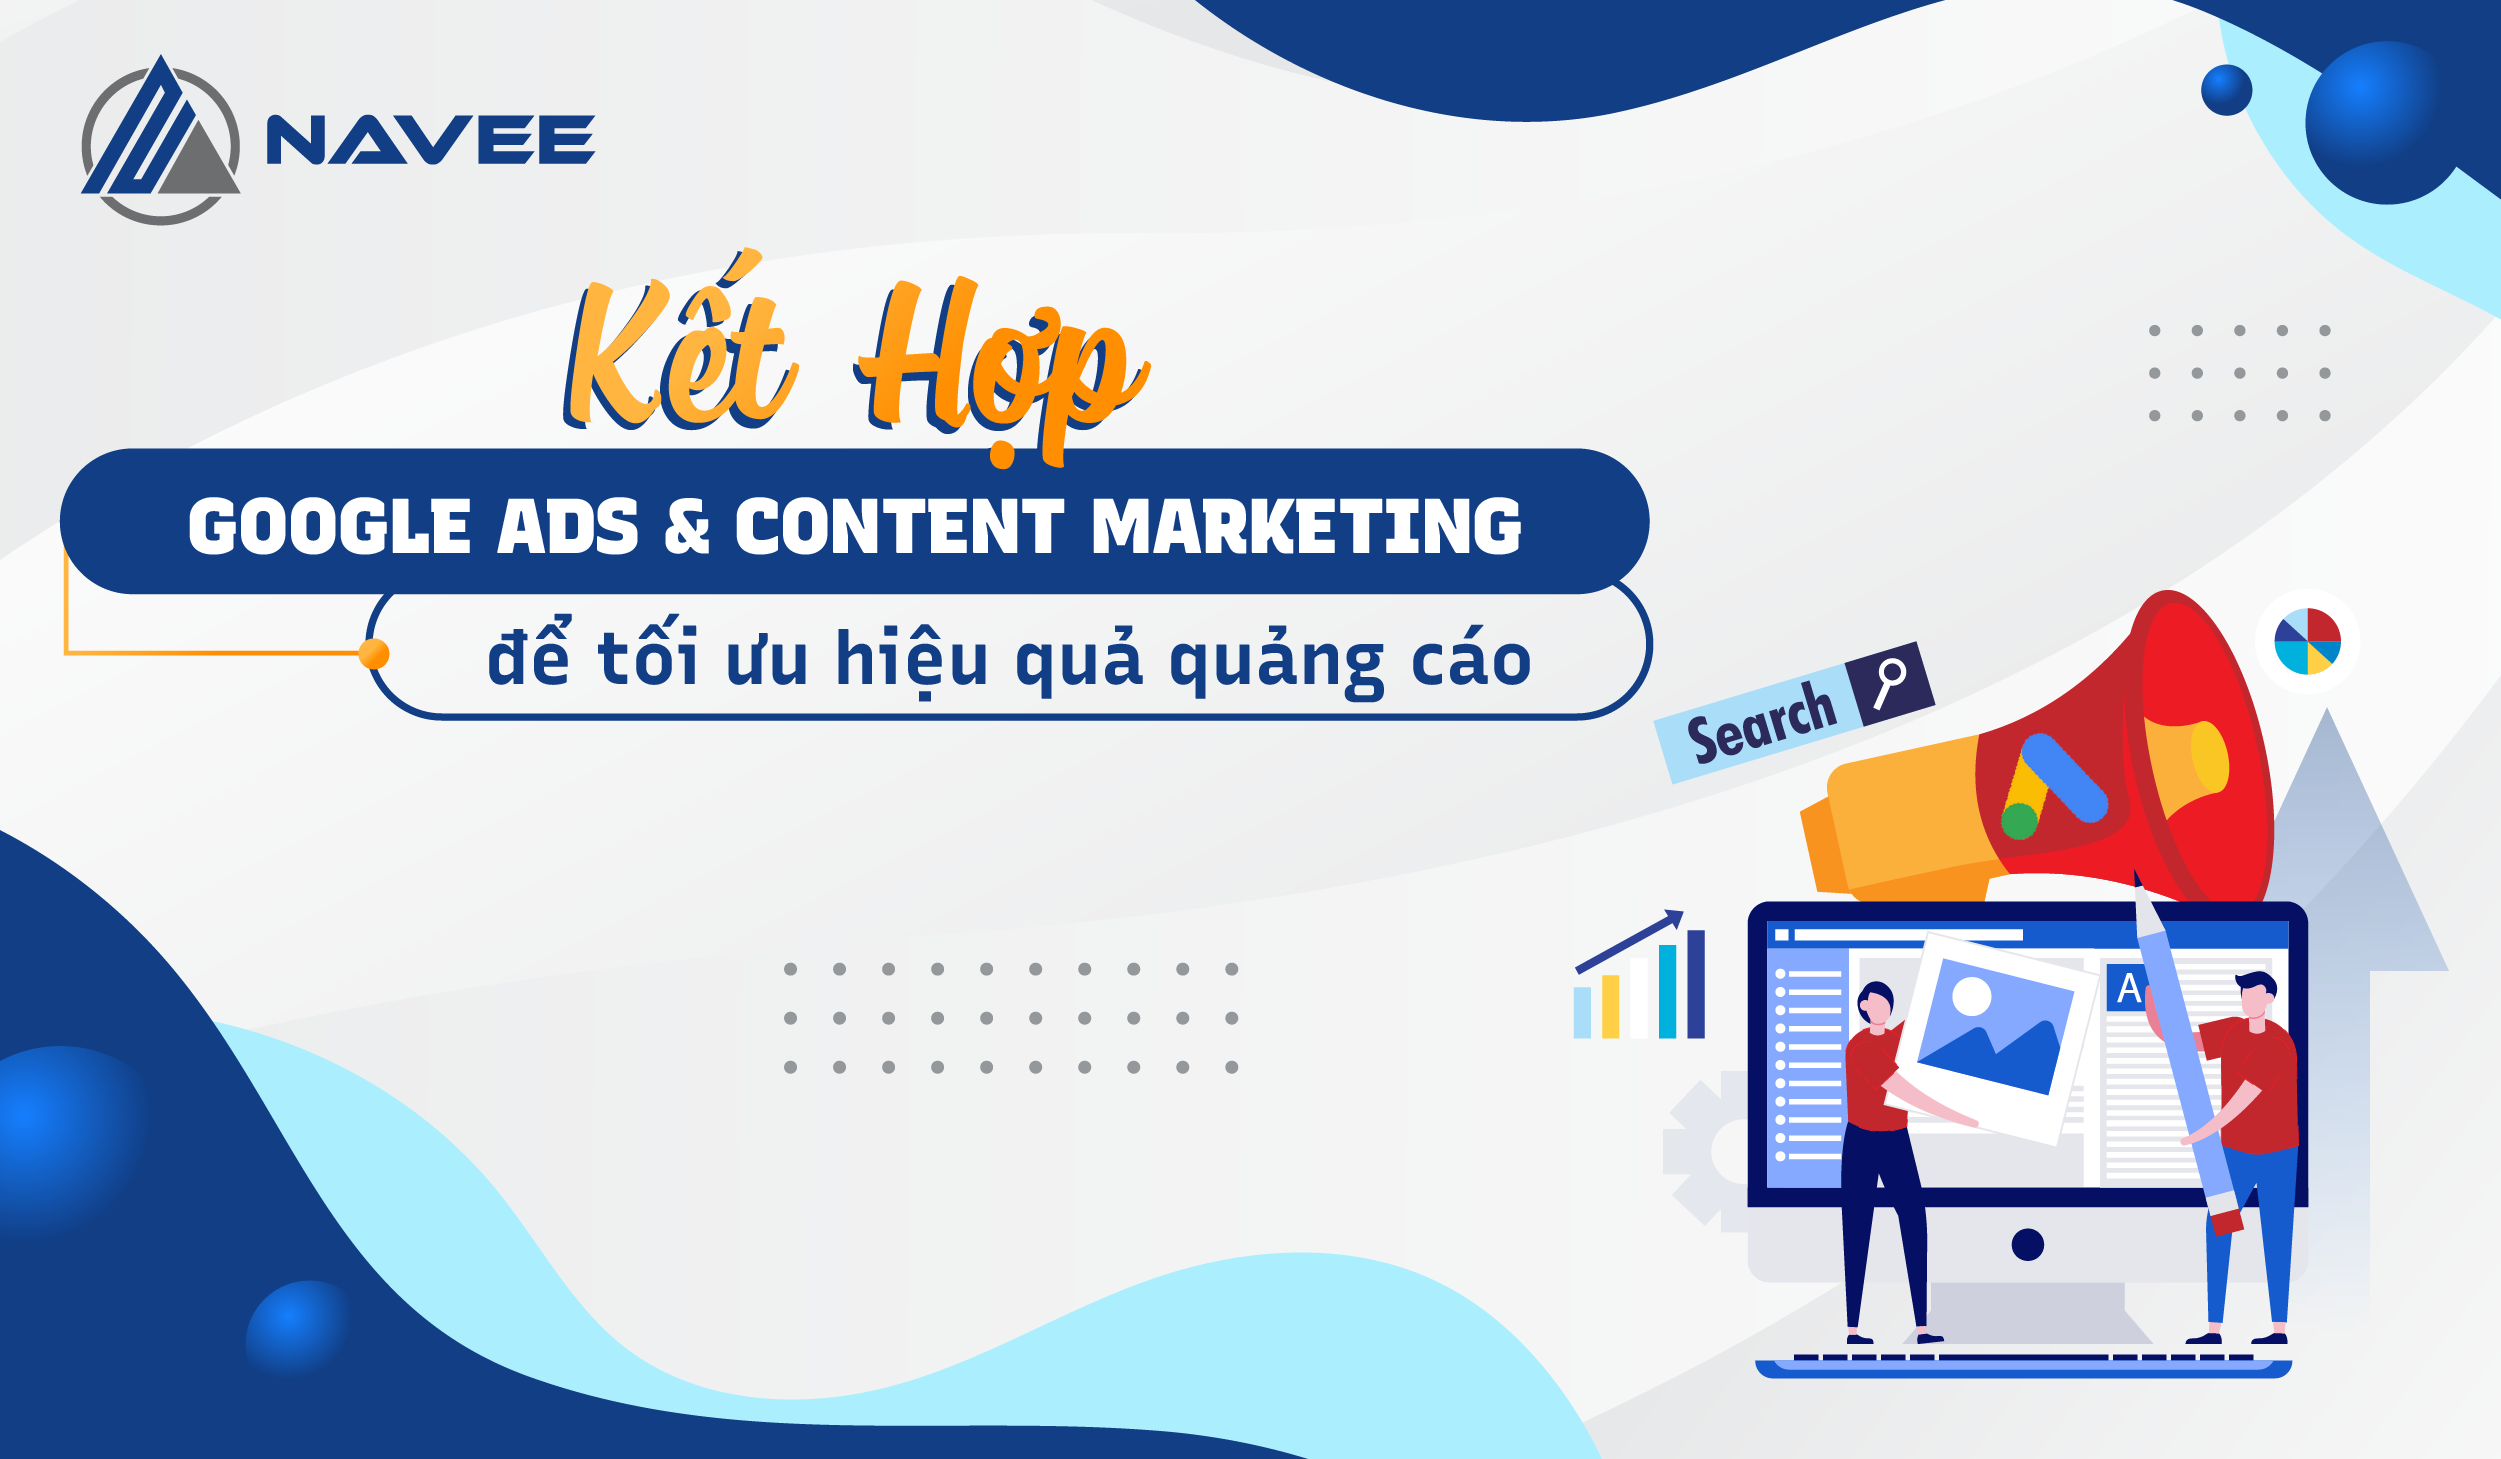 Featured image for “5 Cách Kết Hợp Google Ads Với Content Marketing Để Tối Ưu Hiệu Quả Quảng Cáo”